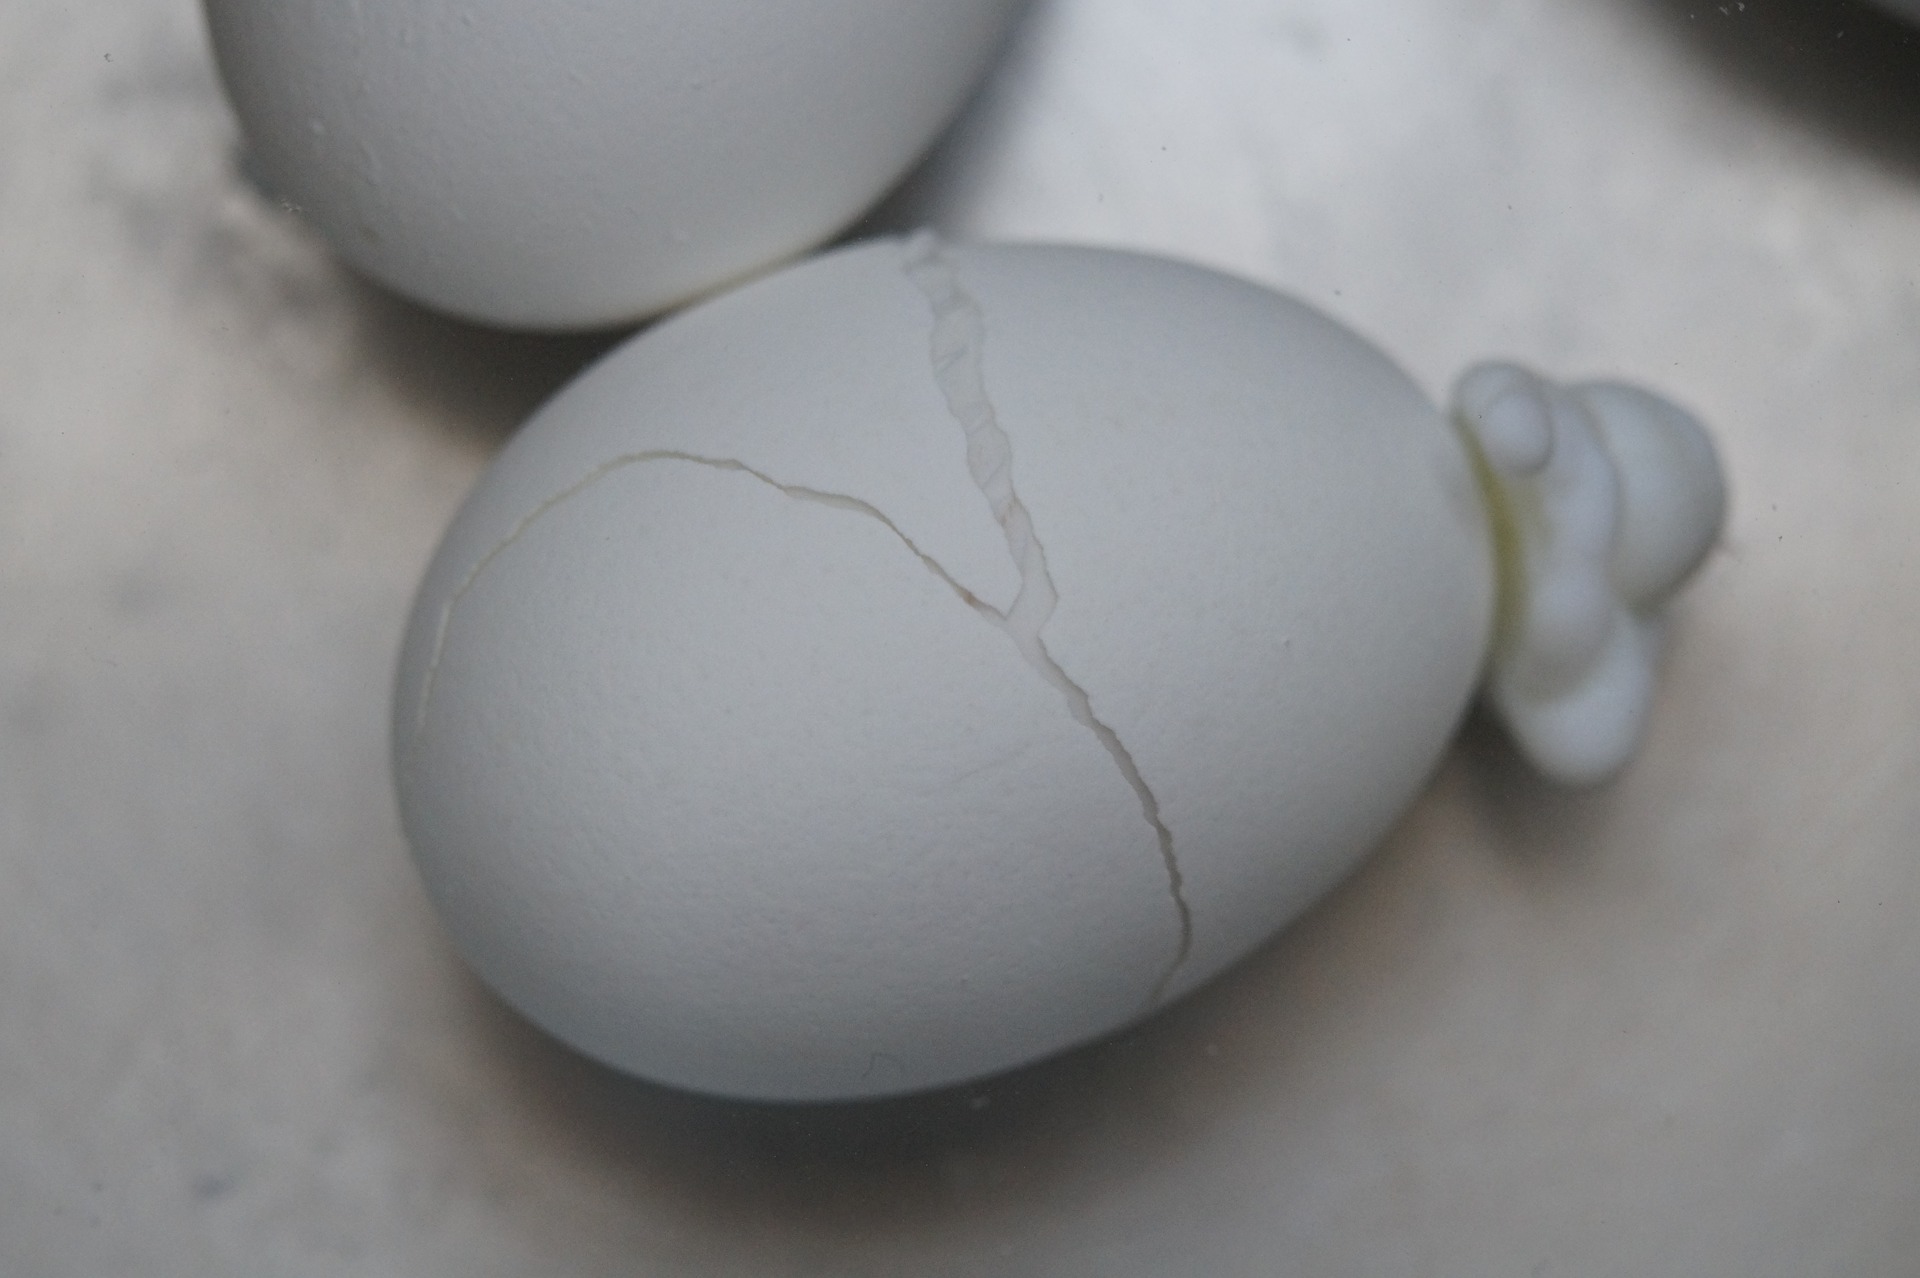 Cracked Boiled Egg